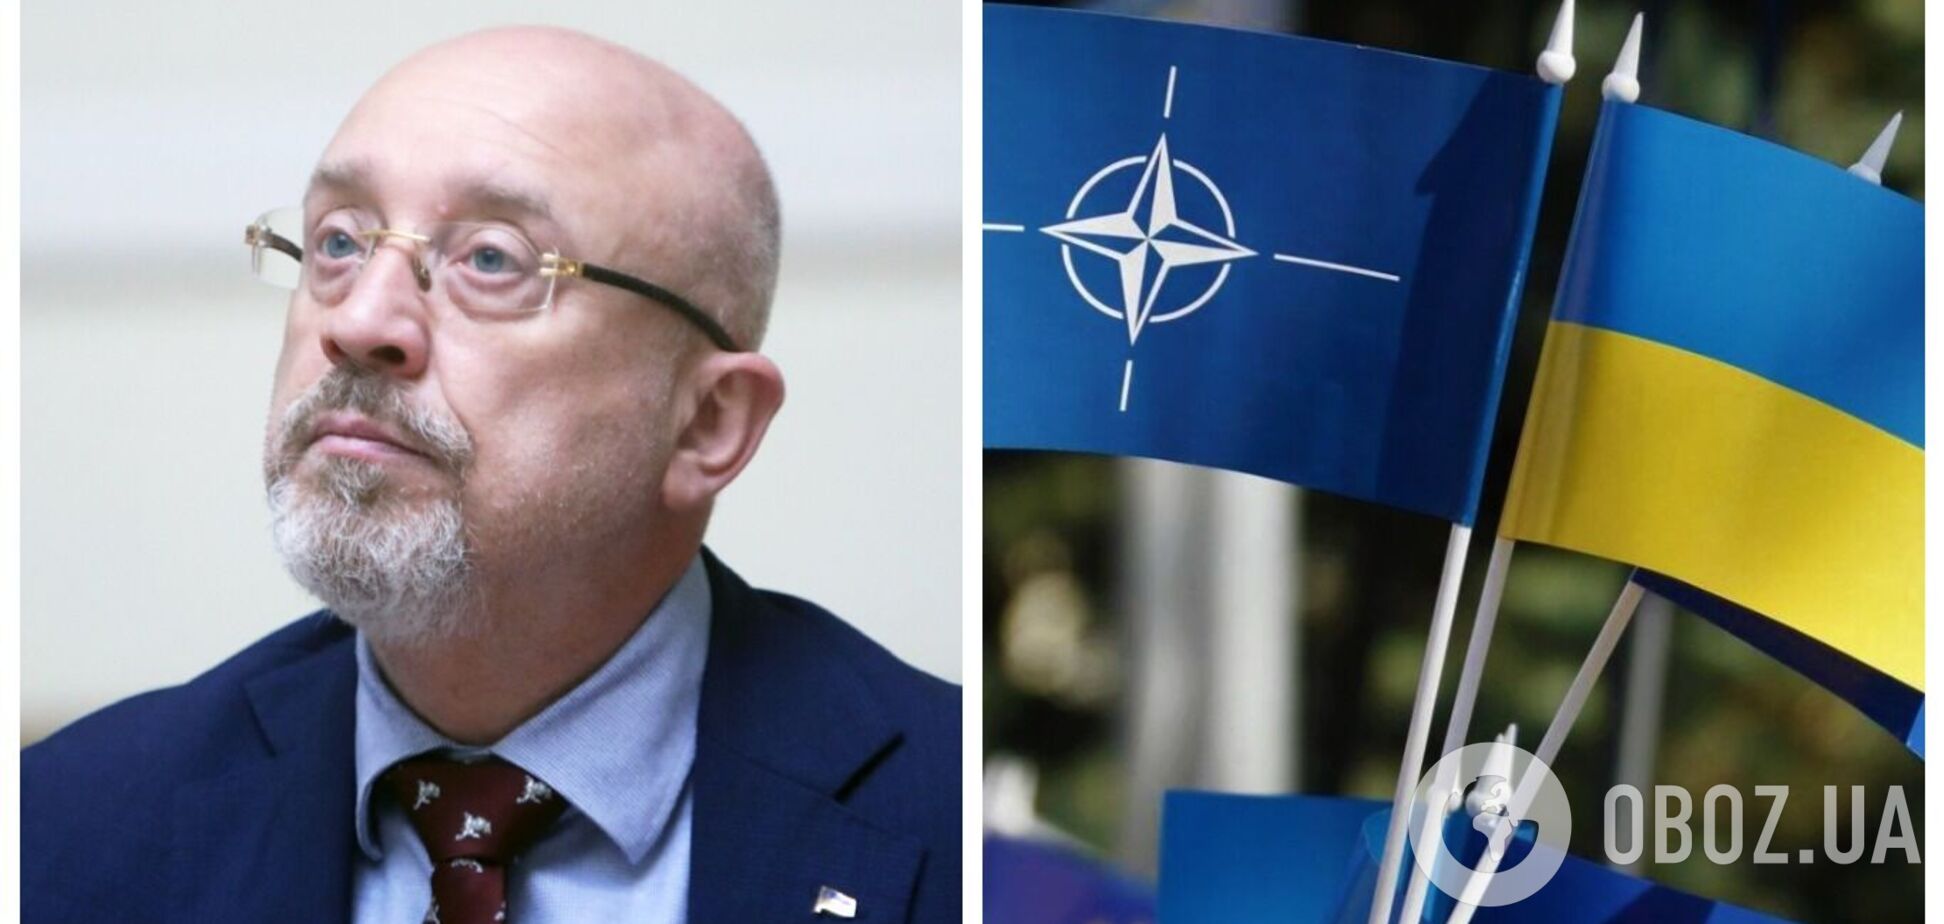 Резніков про перспективи вступу України до НАТО: повинні робити ставку на інтеграцію де-факто, беручи все найкраще